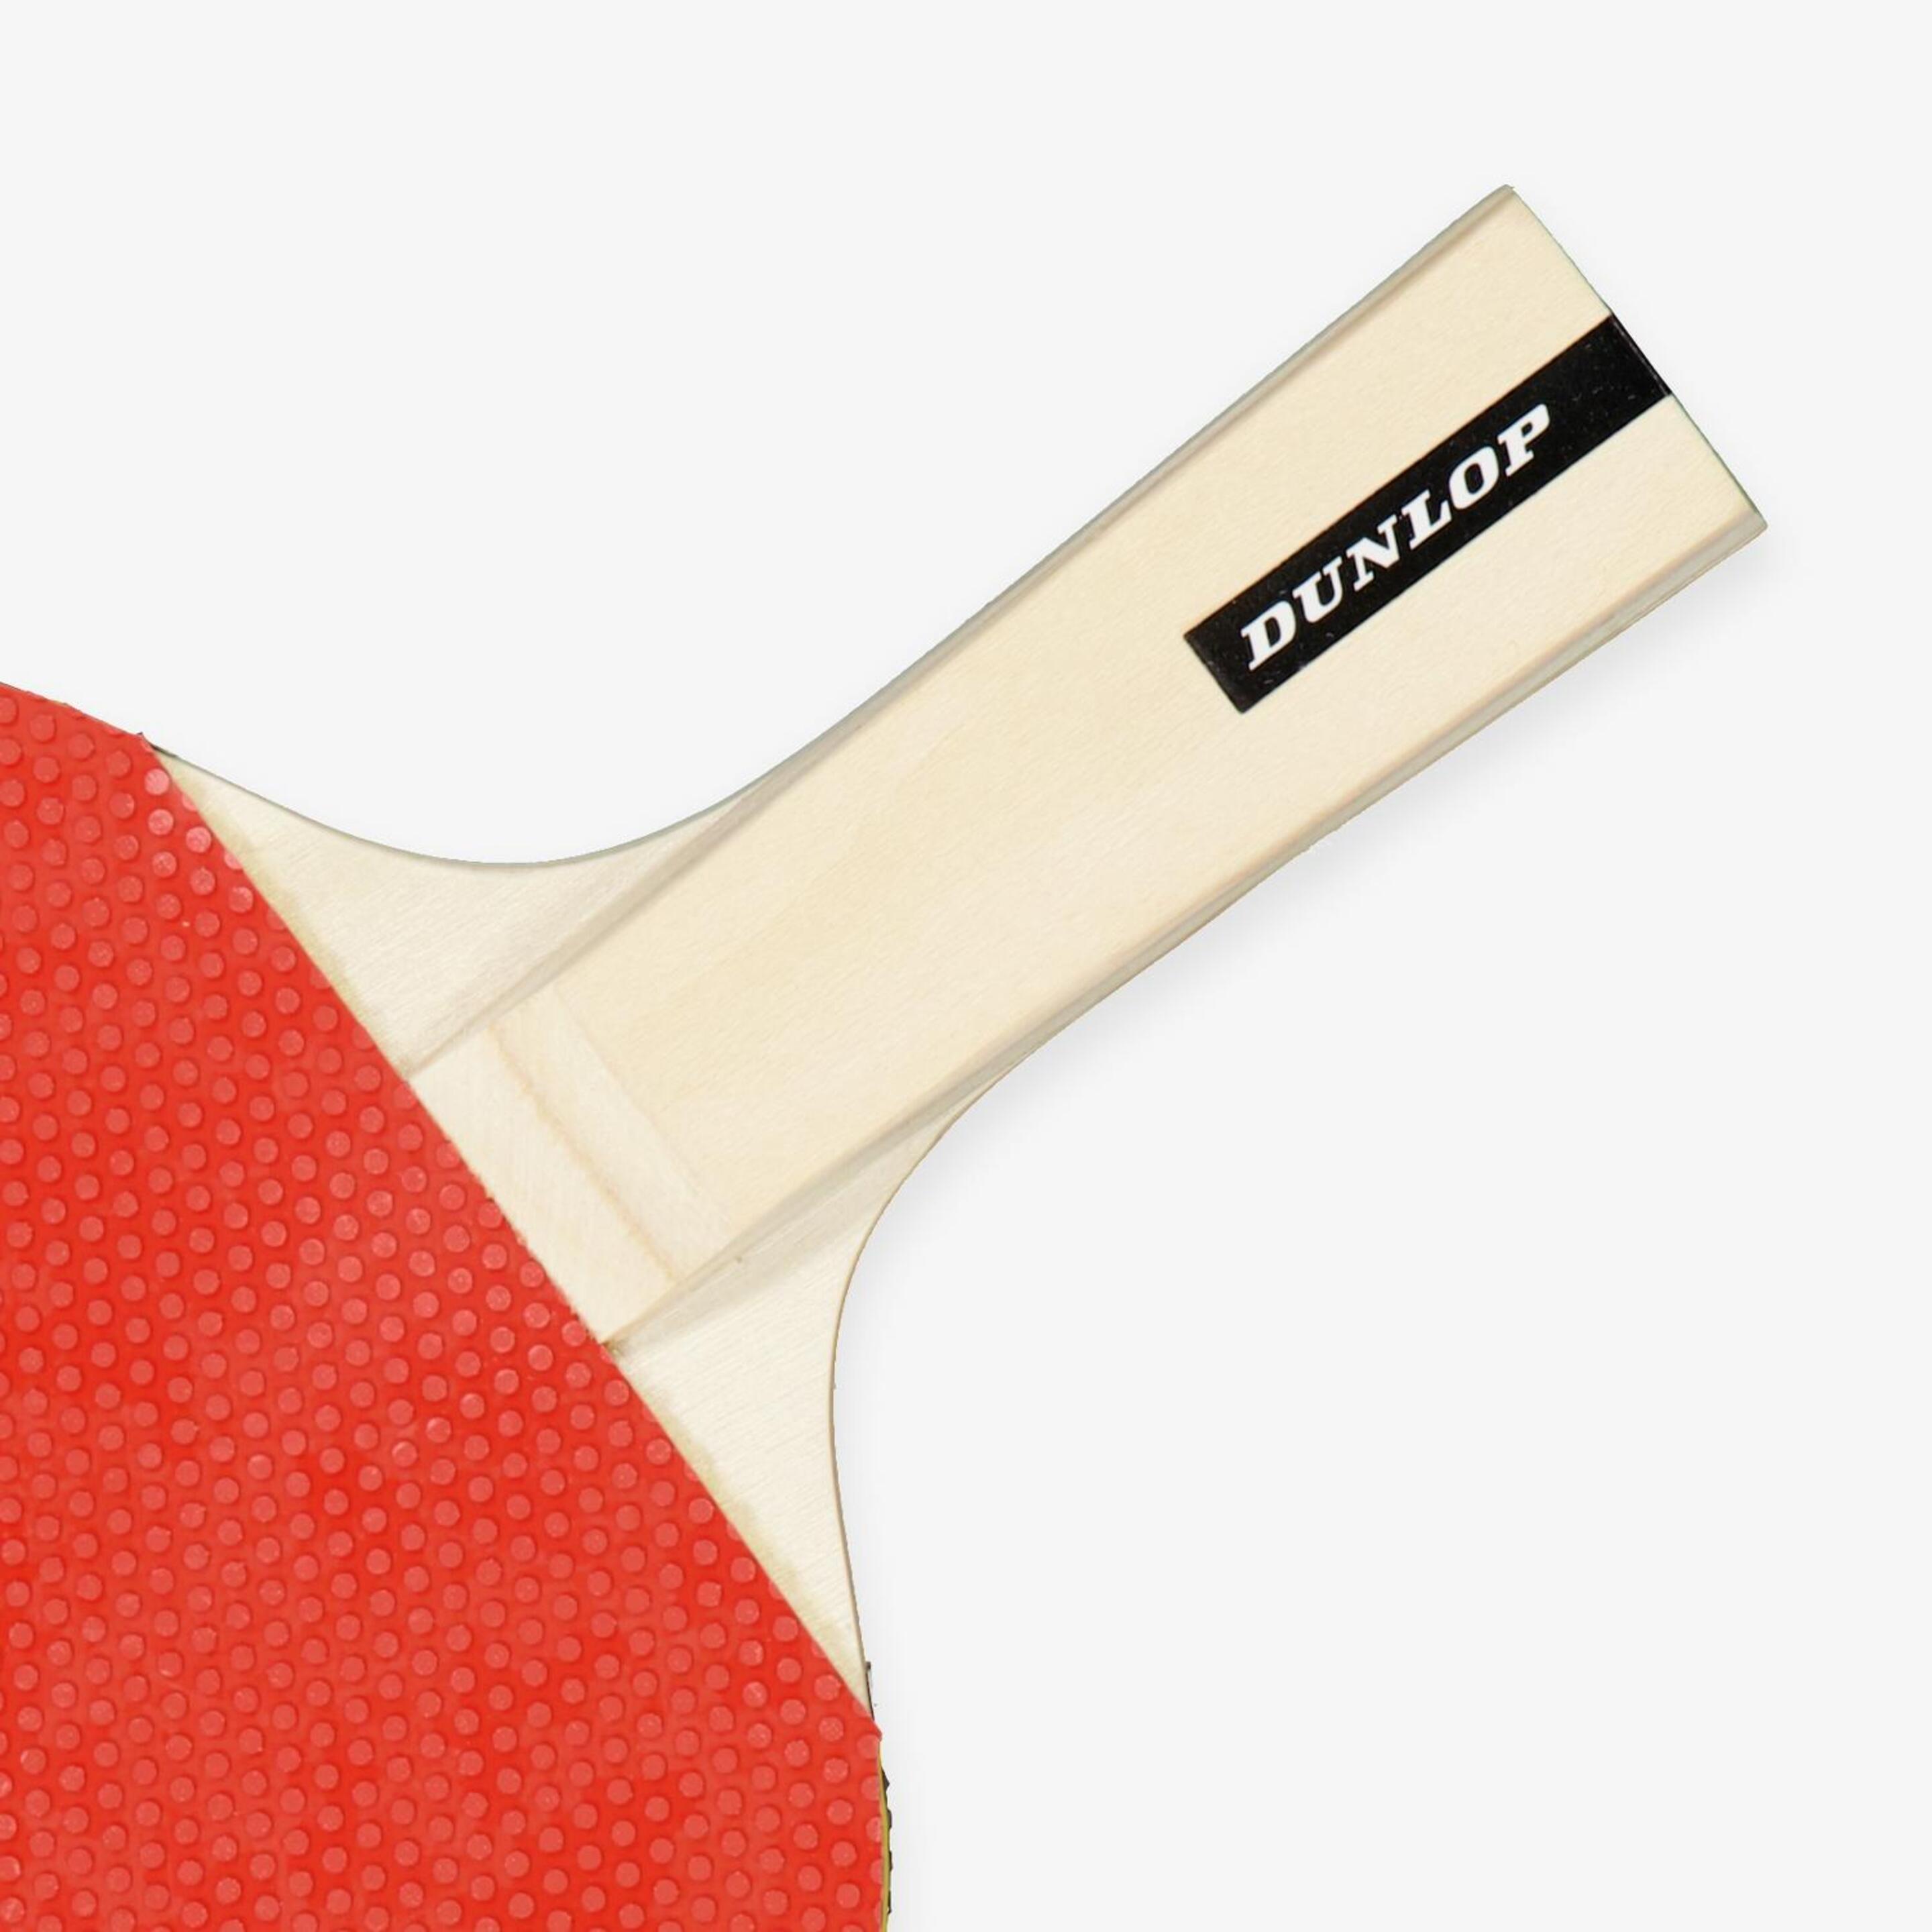 Dunlop Match Set - Vermelho - Pack 4 Raquetes + 6 Bolas Ping Pong | Sport Zone